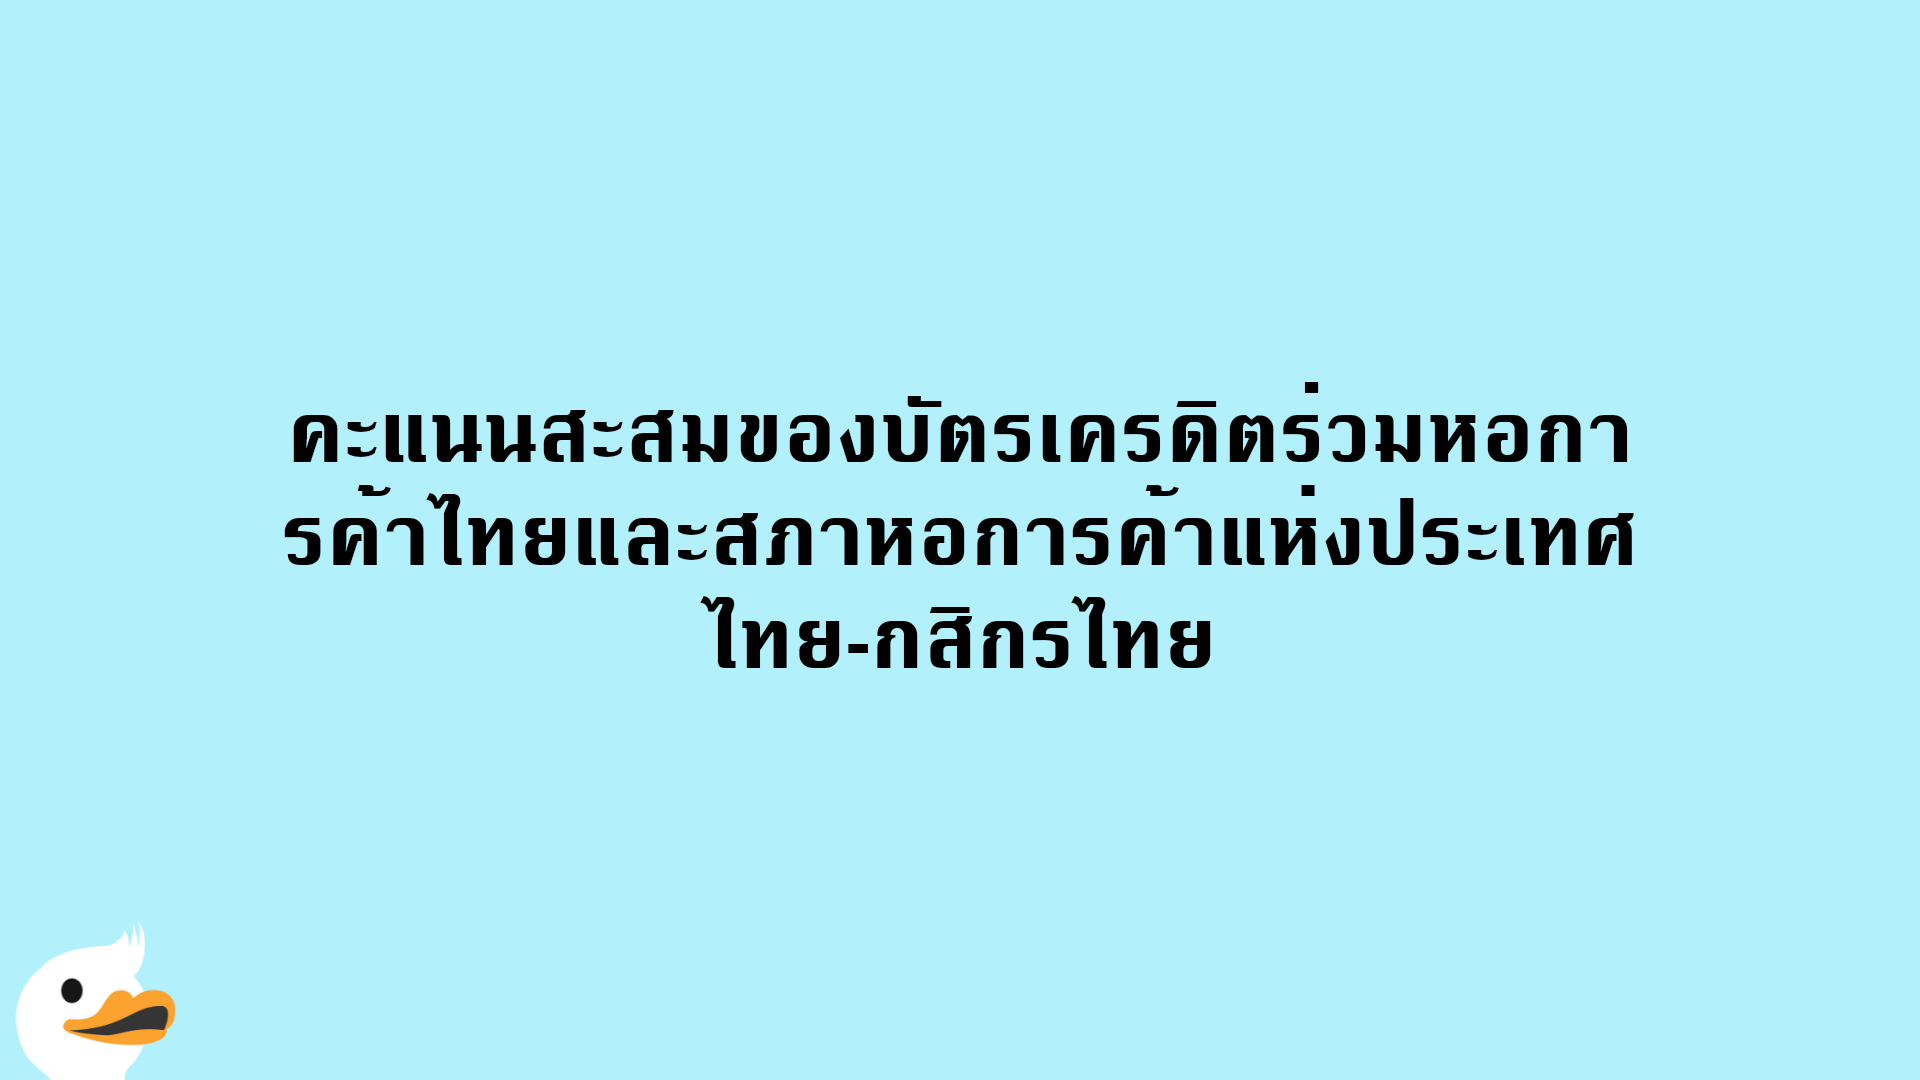 คะแนนสะสมของบัตรเครดิตร่วมหอการค้าไทยและสภาหอการค้าแห่งประเทศไทย-กสิกรไทย